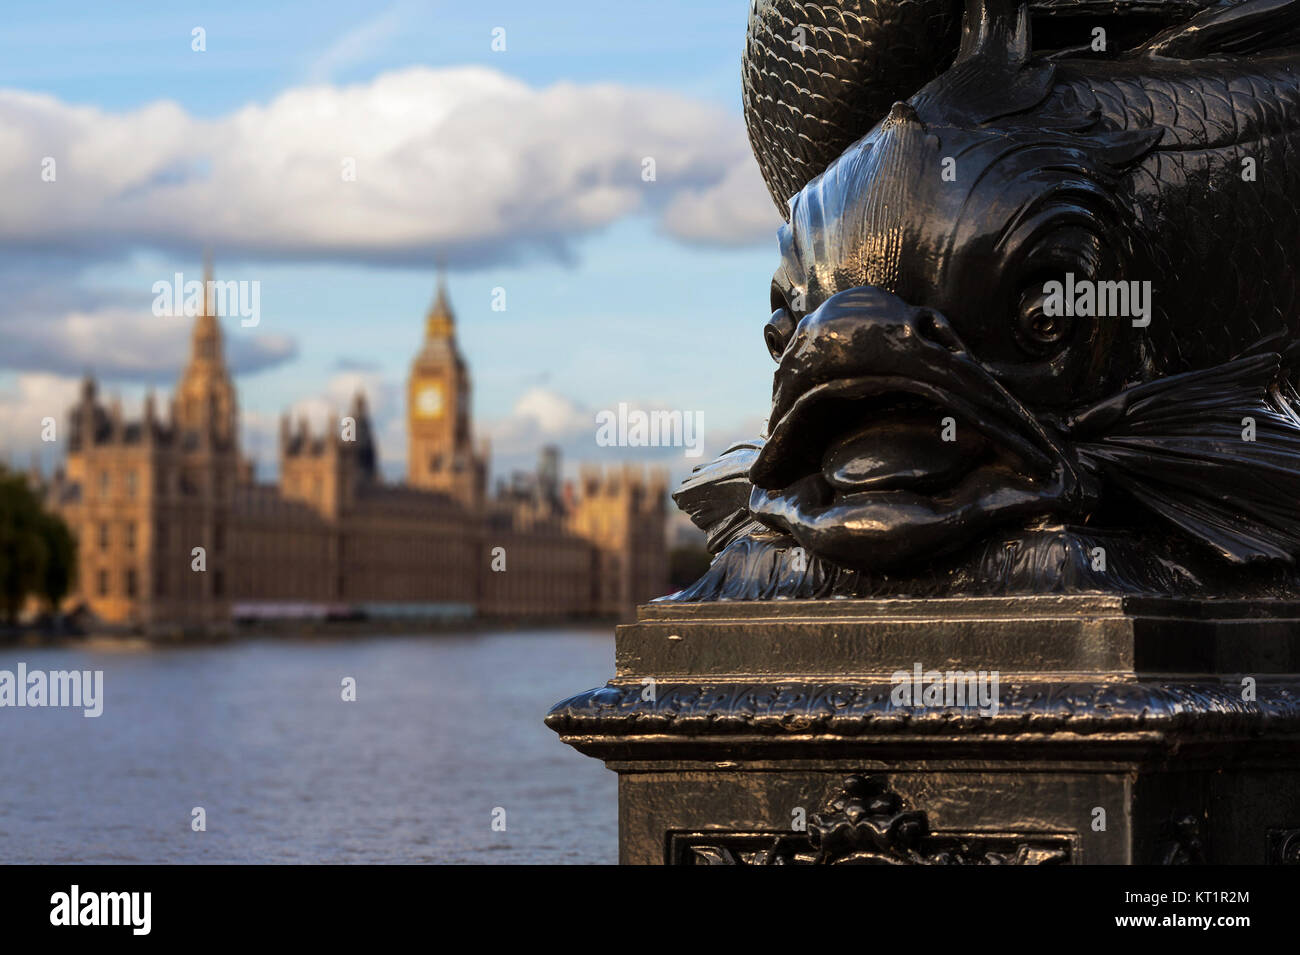 Gros plan du poisson aussi distinctif sur le design des lampadaires en fonte à Westminster, Londres avec les Chambres du Parlement n'est pas mise au point dans le backgroun Banque D'Images